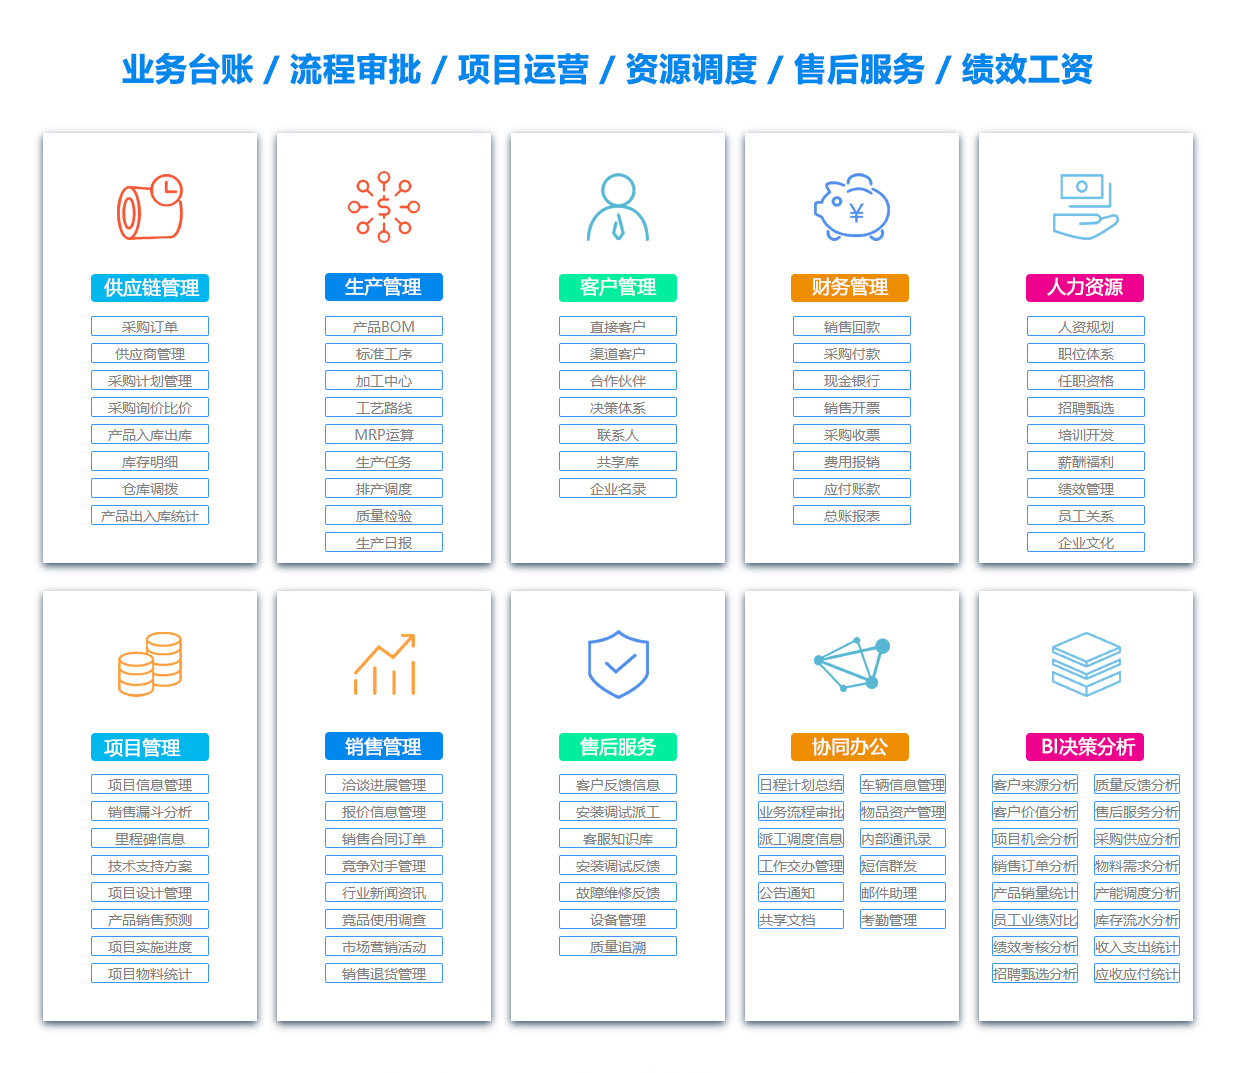 黑龙江MIS:信息管理系统